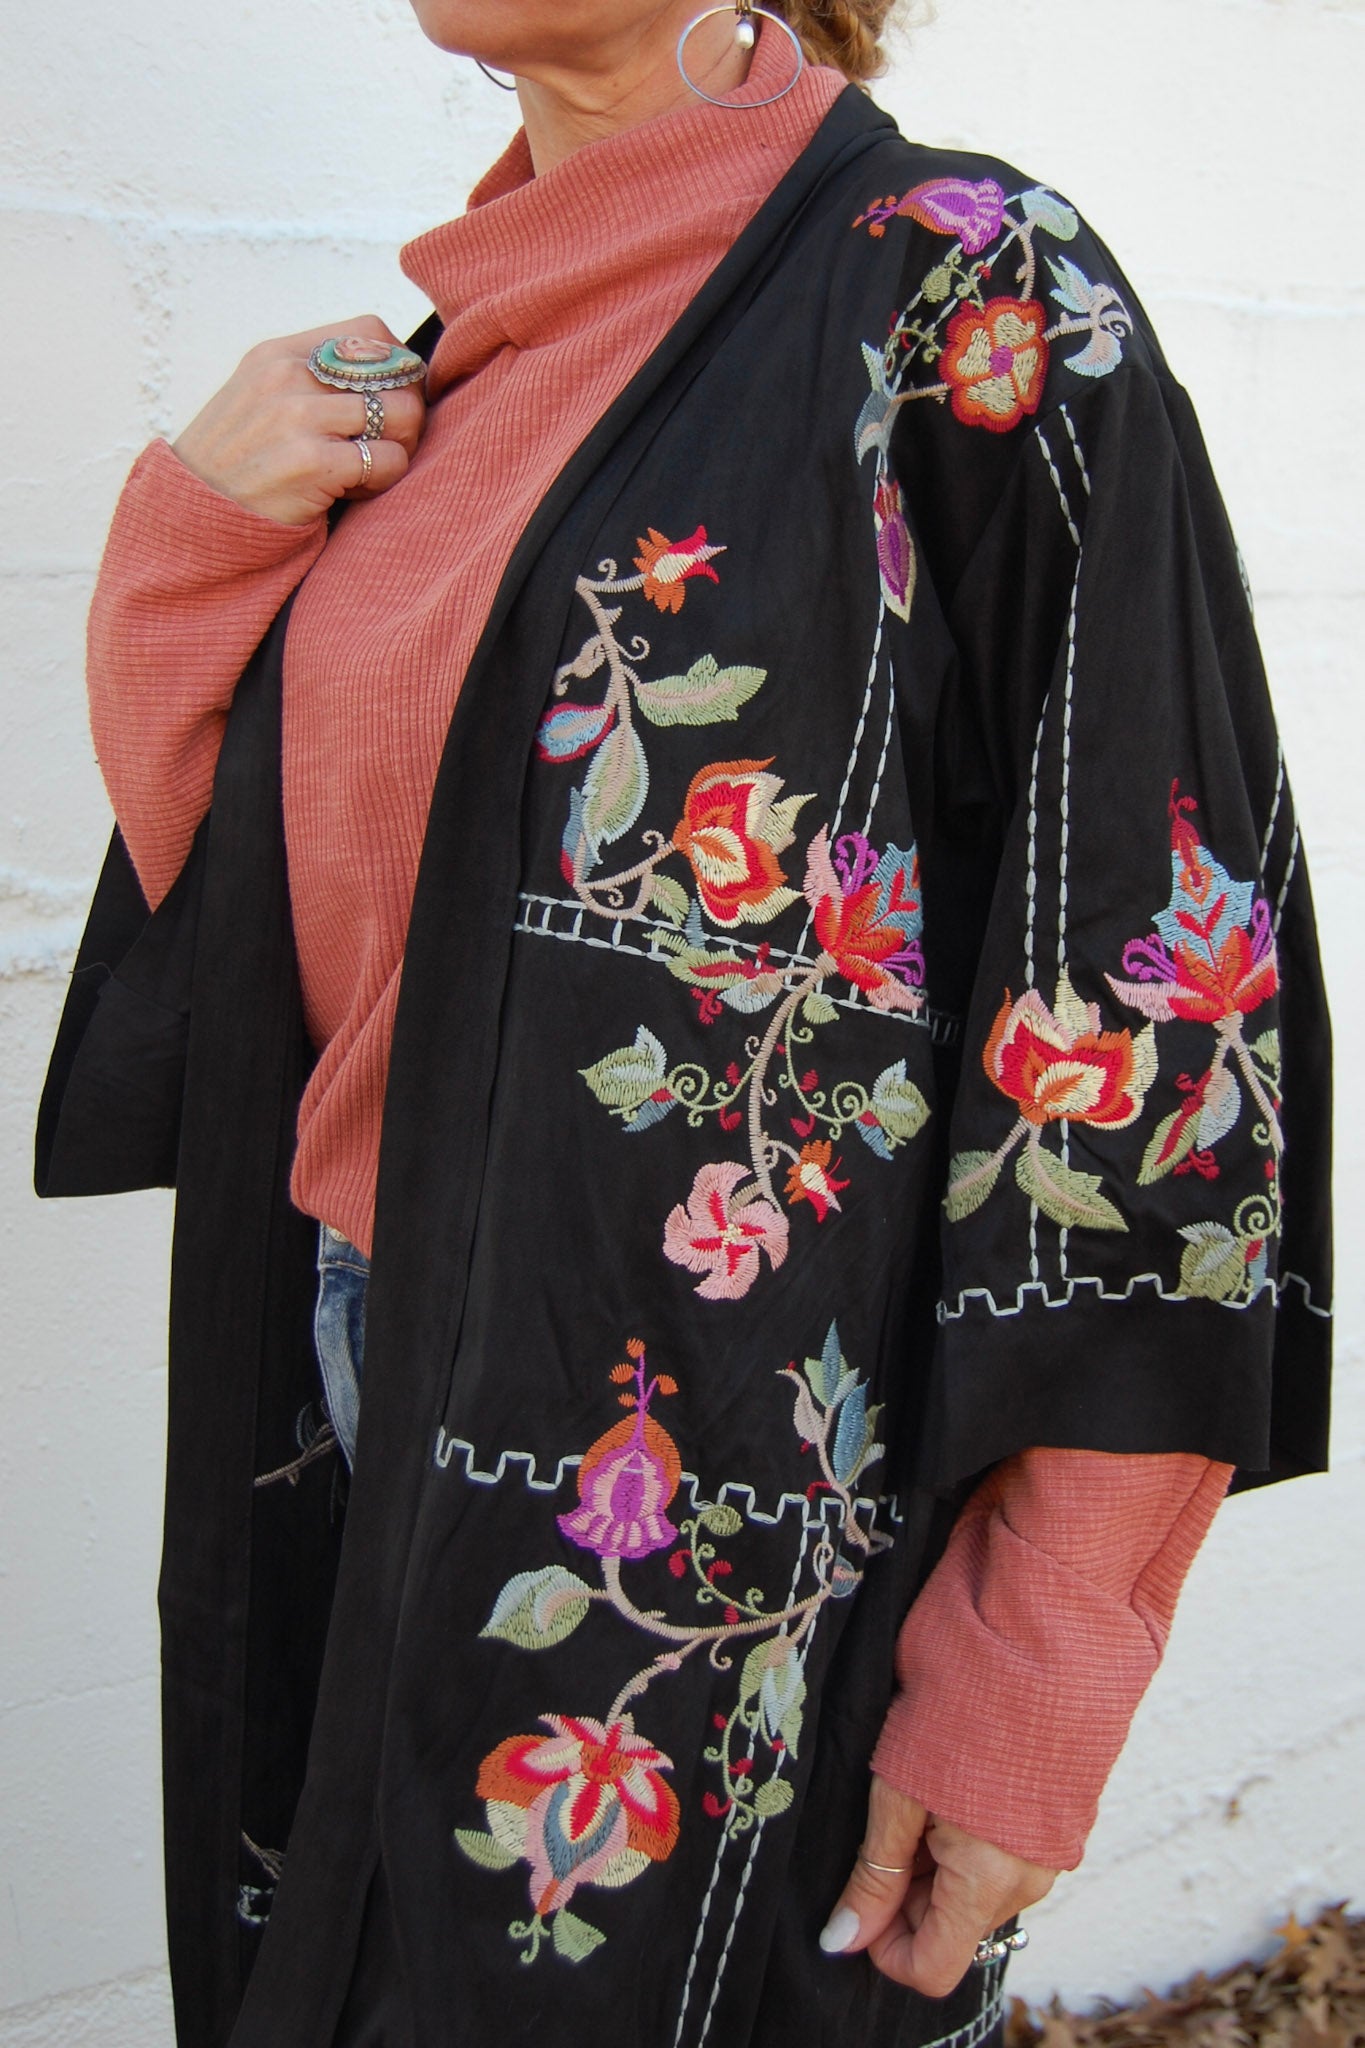 The Gina Suede Kimono in Black - SpiritedBoutiques Boho Hippie Boutique Style Kimono, BIZ